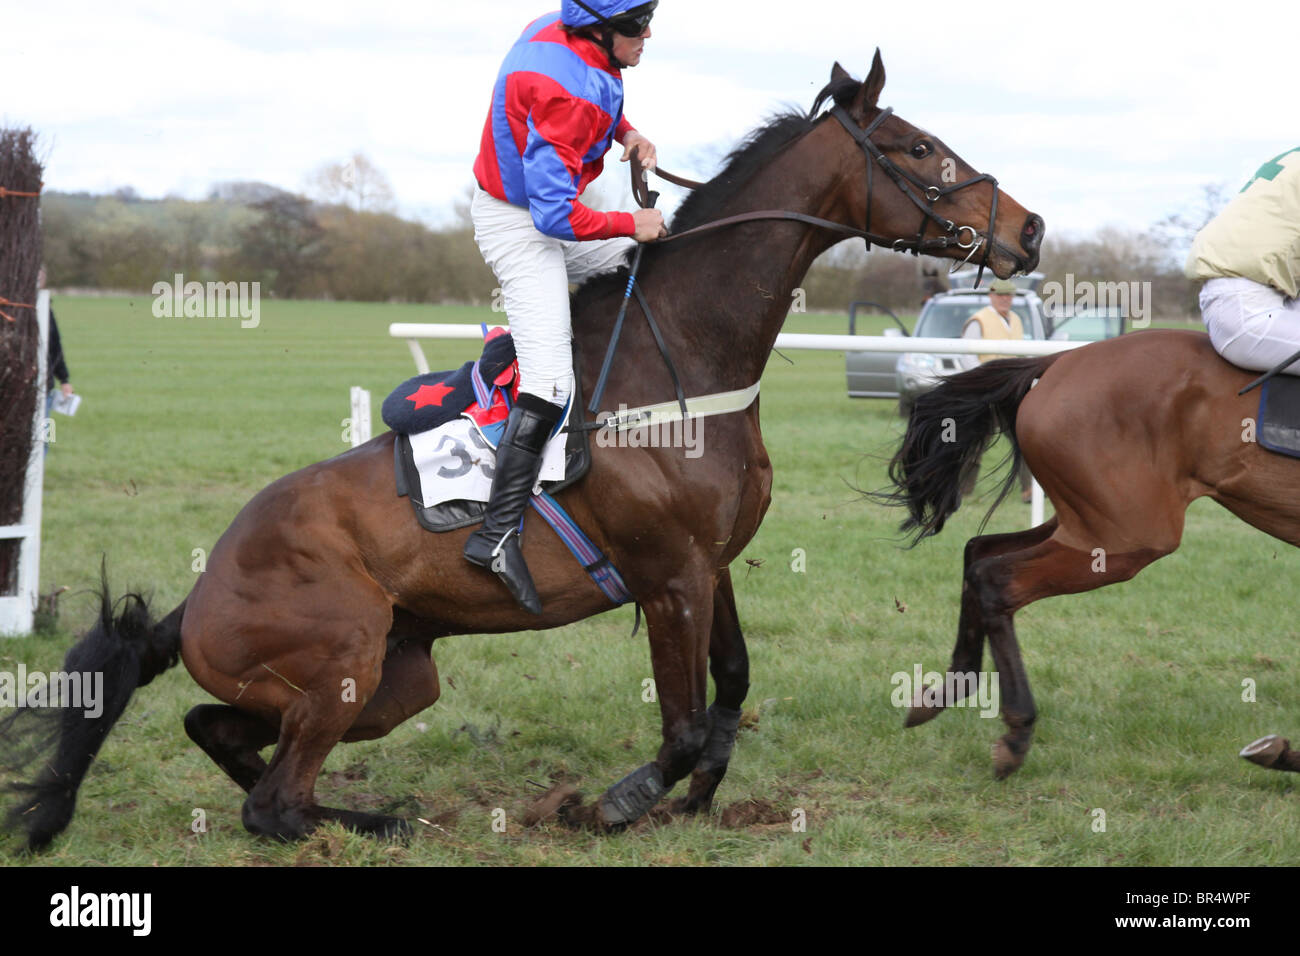 Jockey tomber un cheval après un saut dans une course de point à point Banque D'Images